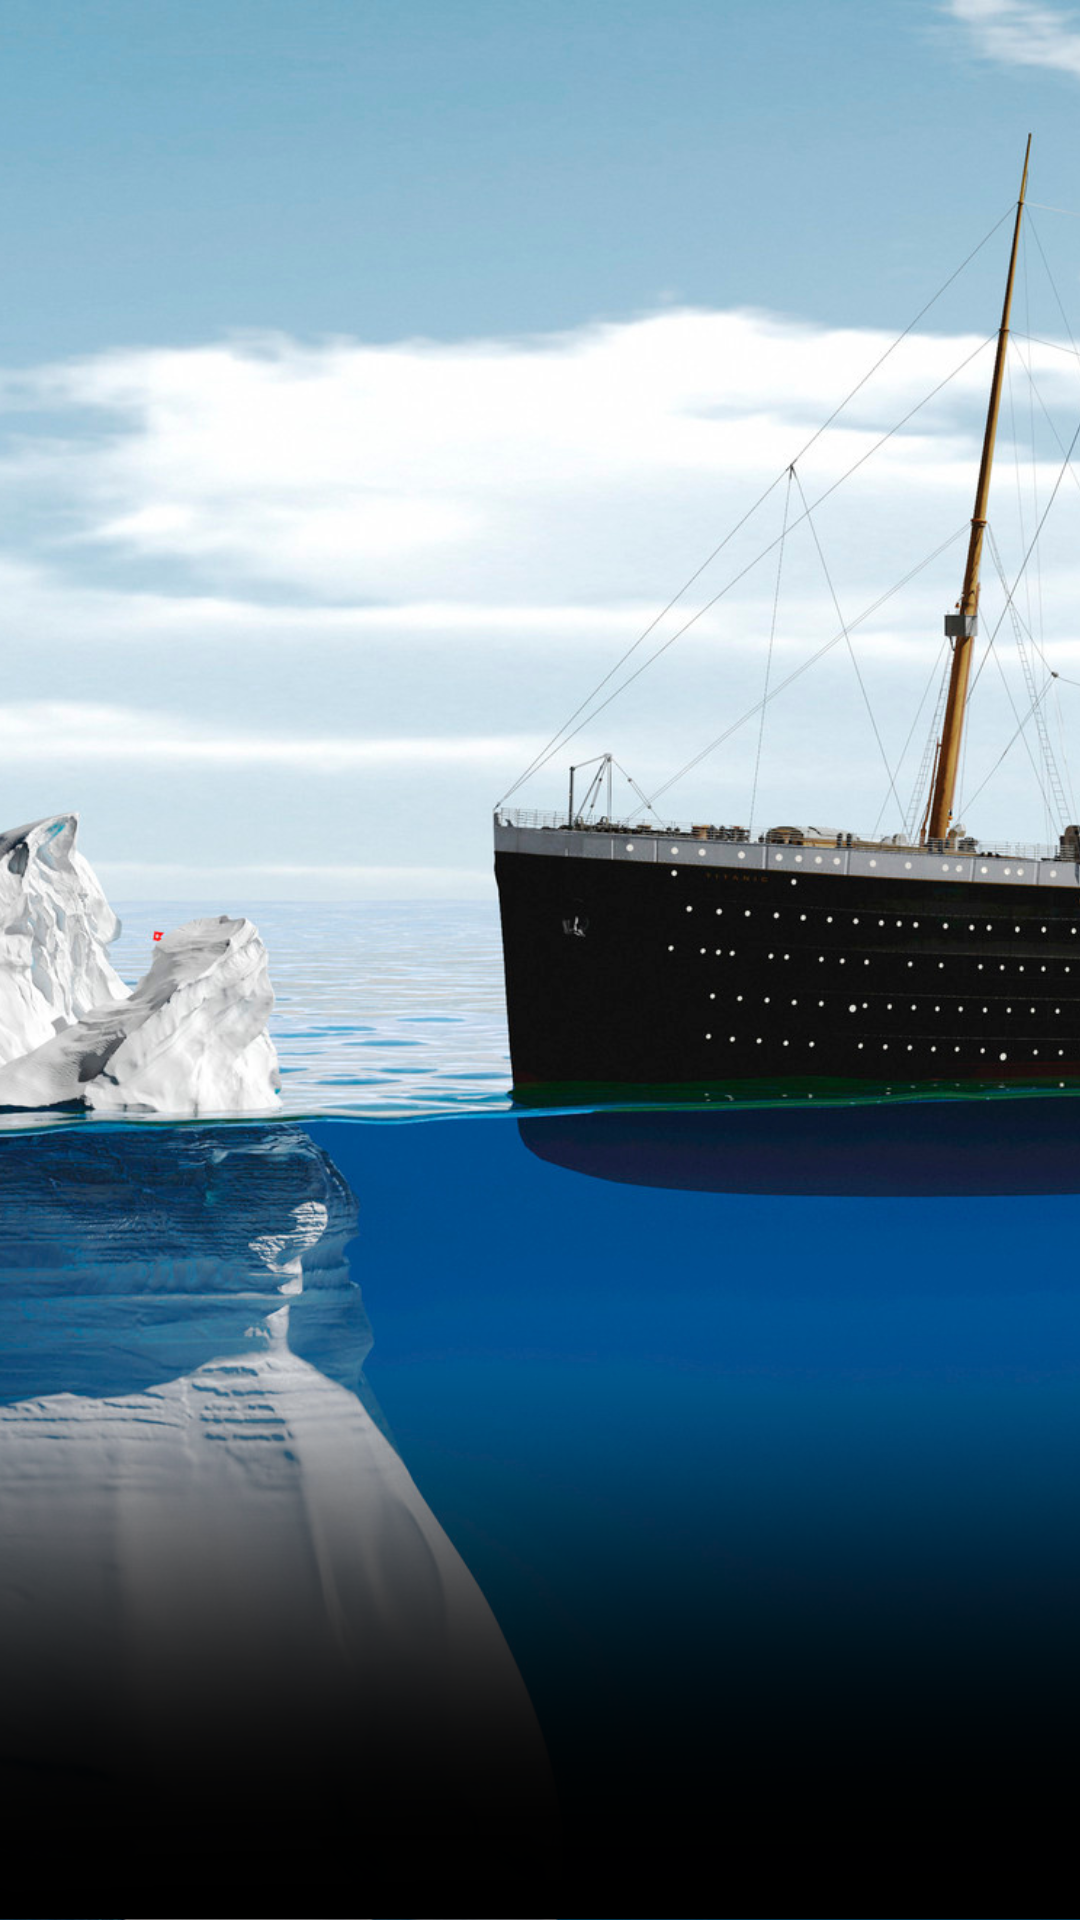 Ota selvää 59+ imagen titanic iceberg warnings - abzlocal fi